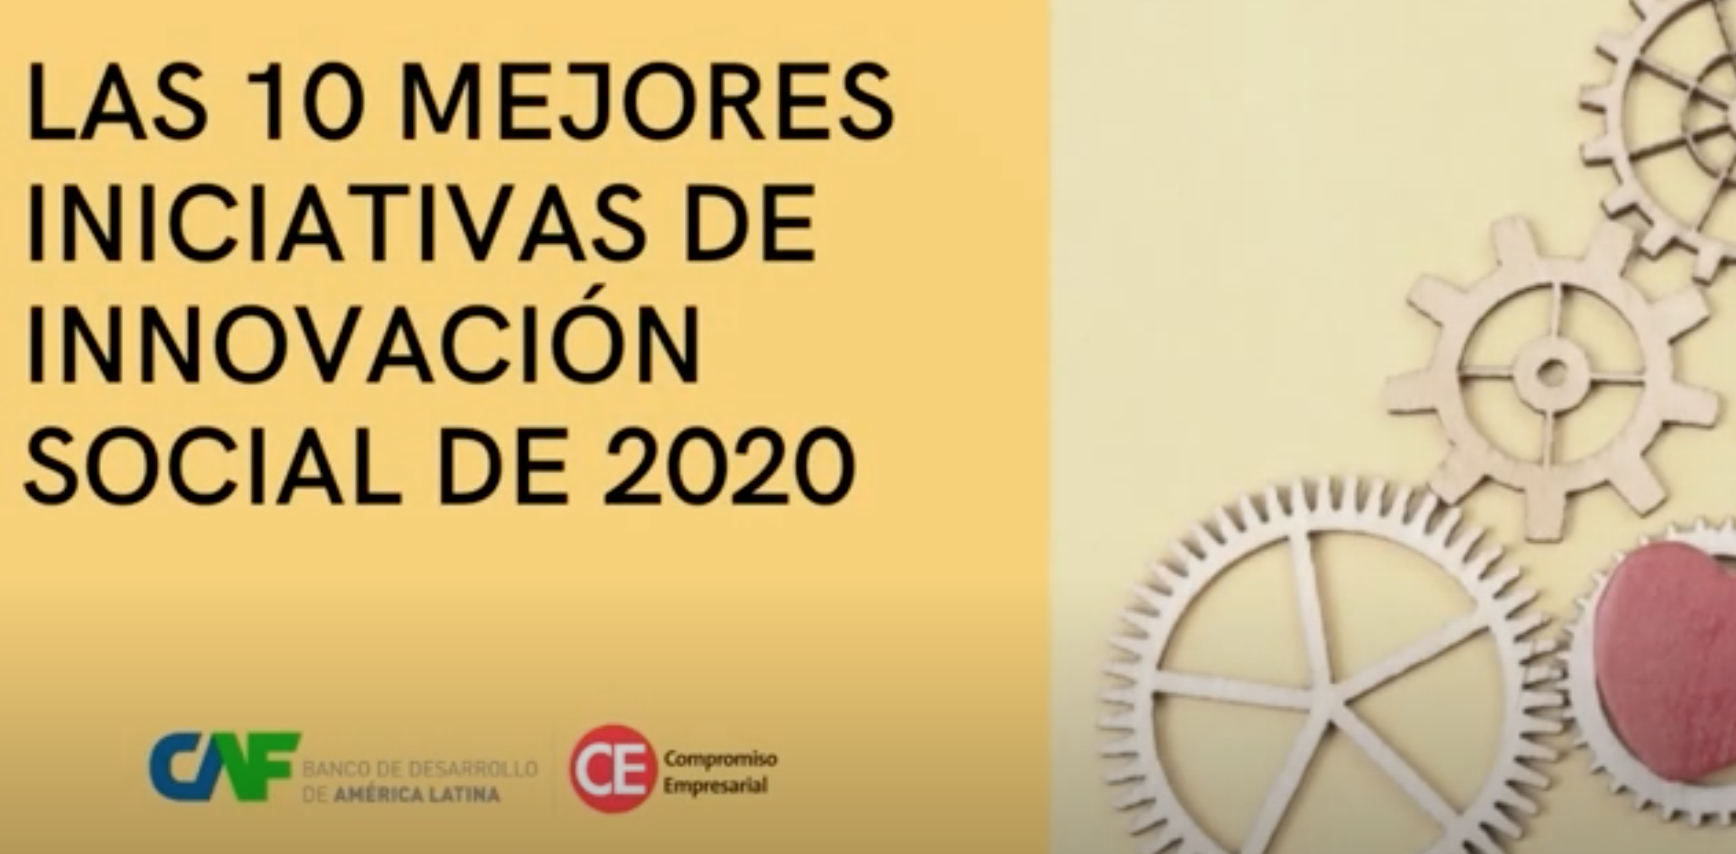 CAF y Compromiso Empresarial premian las 10 mejores iniciativas de innovación social de 2020